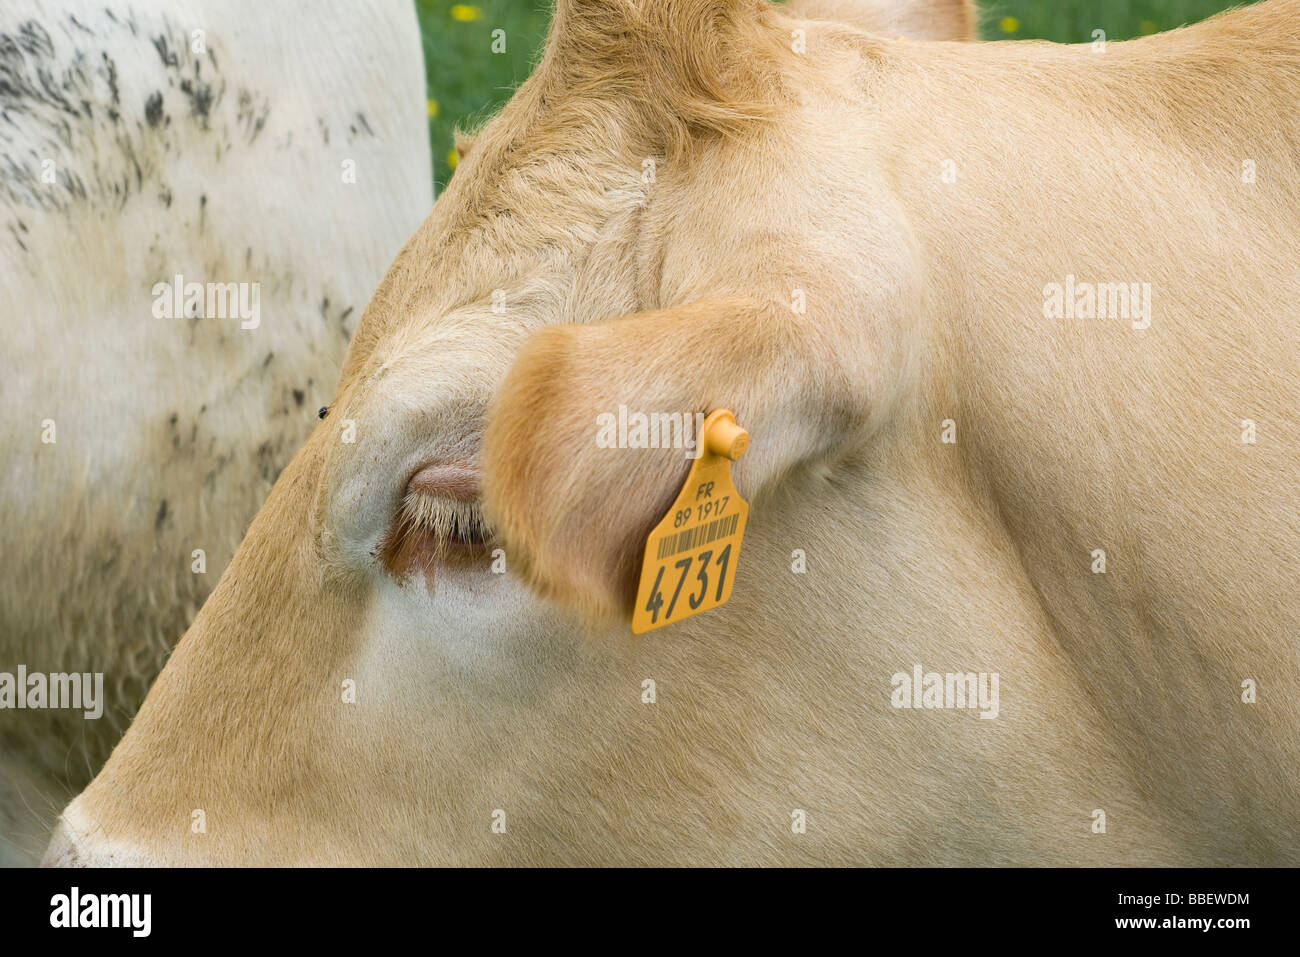 Kuh mit Ohrmarke, extreme Nahaufnahme Stockfoto